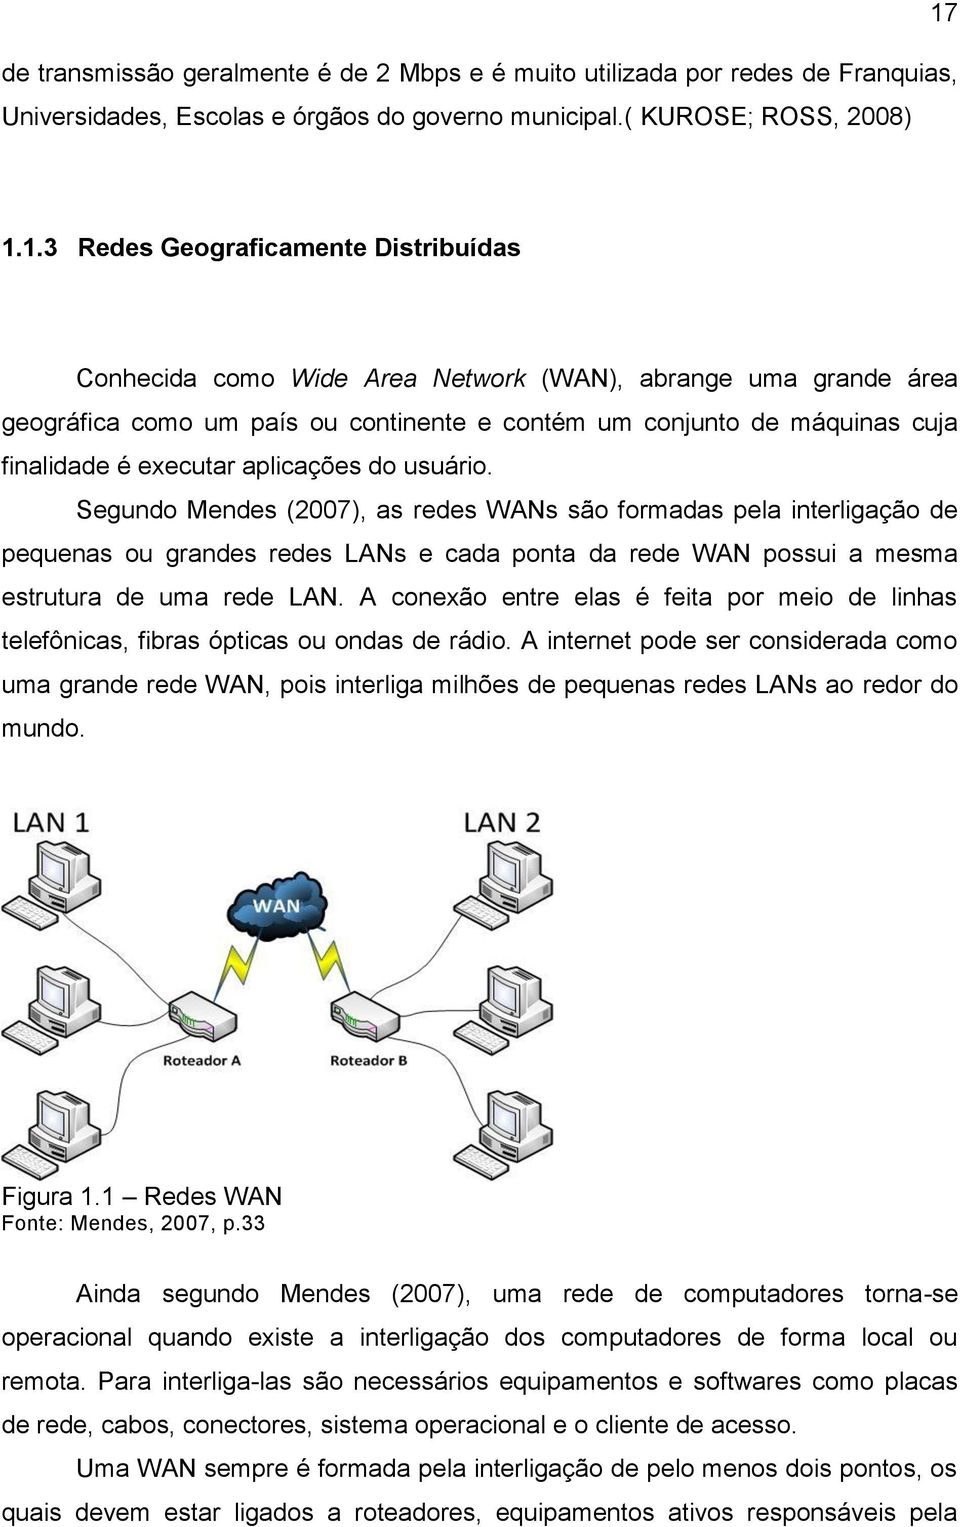 executar aplicações do usuário. Segundo Mendes (2007), as redes WANs são formadas pela interligação de pequenas ou grandes redes LANs e cada ponta da rede WAN possui a mesma estrutura de uma rede LAN.